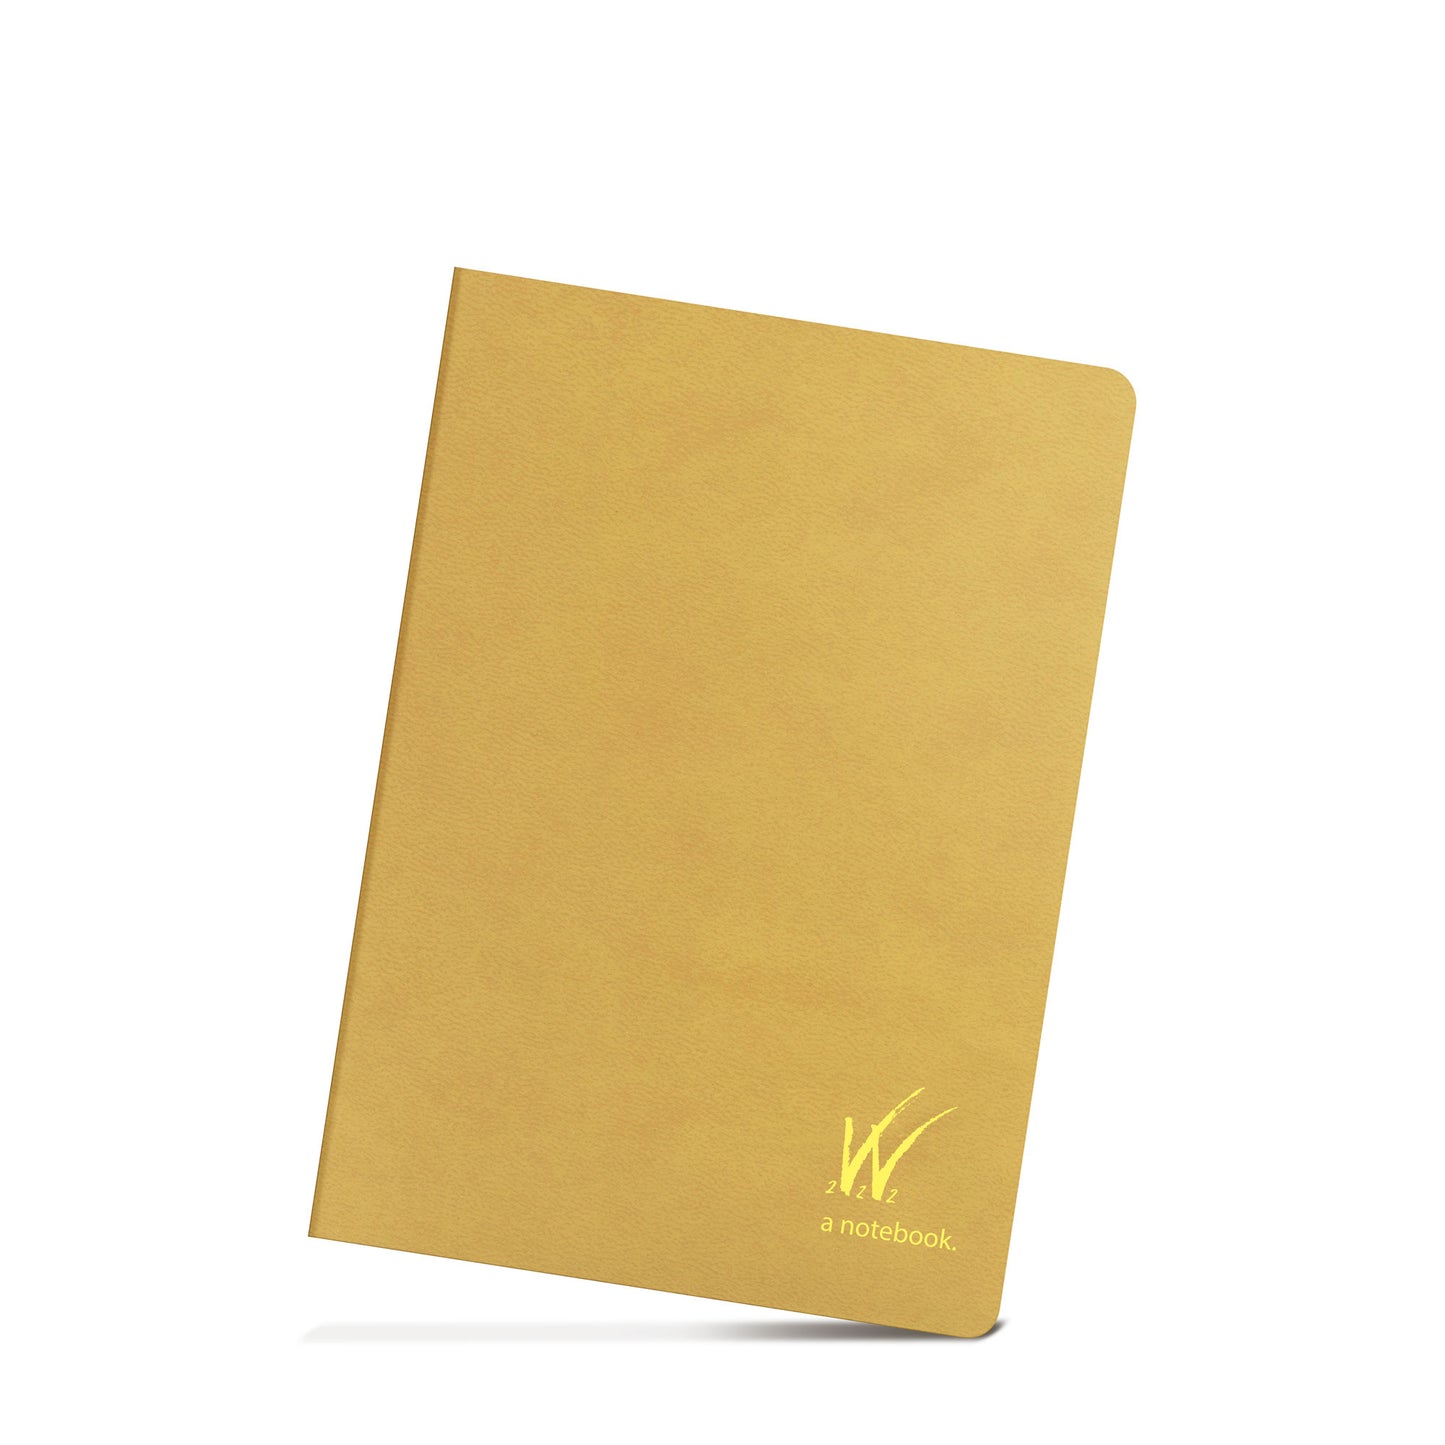 WONDERLAND 222 - B6 Notebook (192 page)